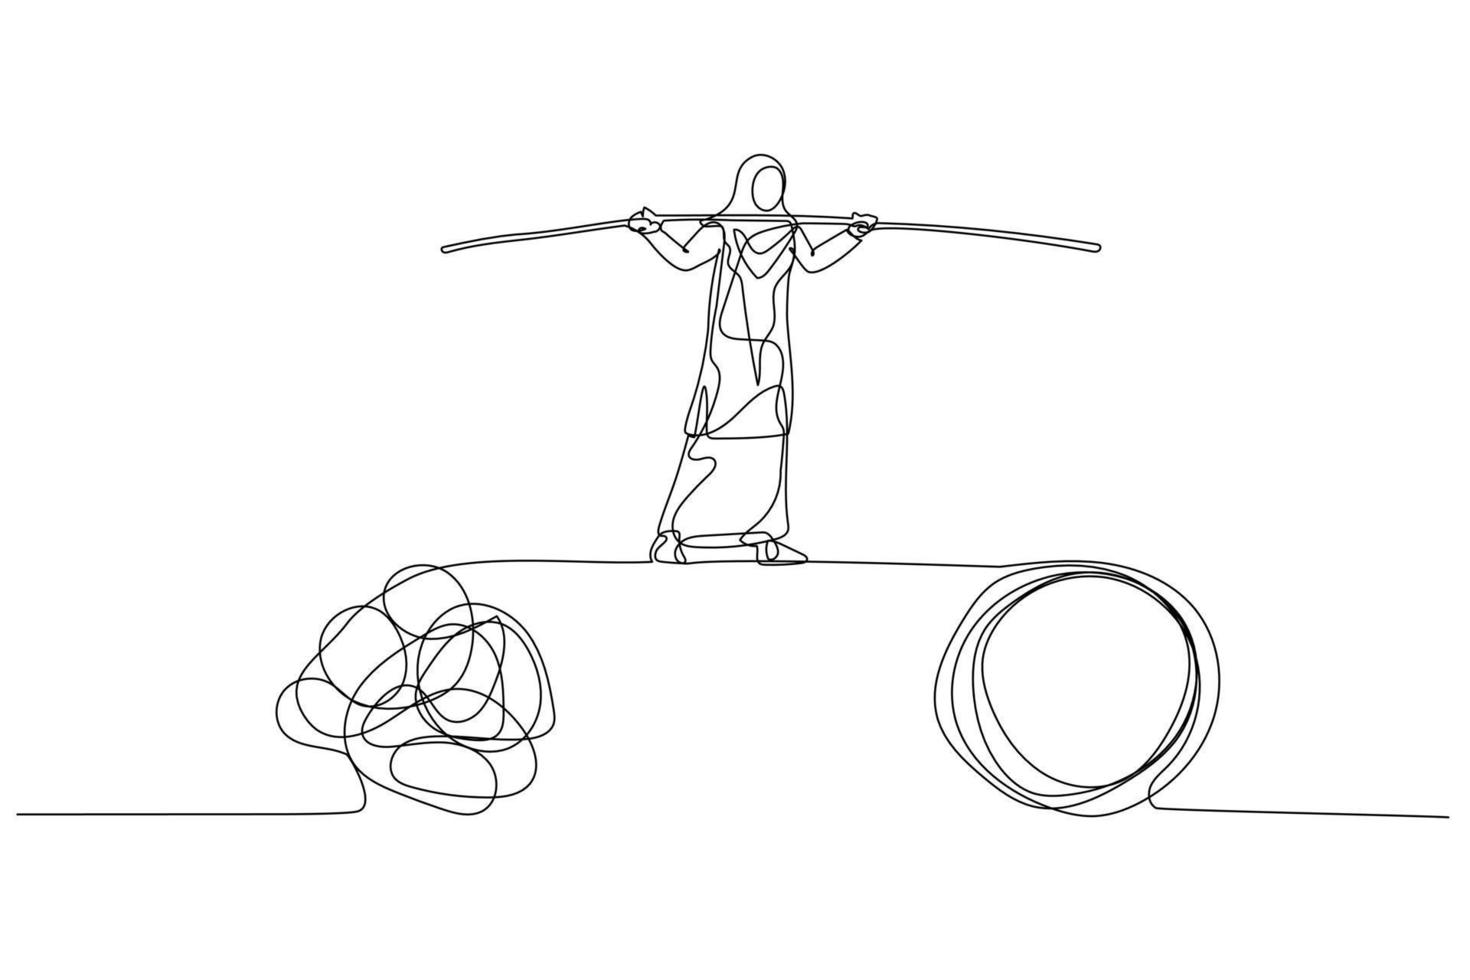 caricatura de una mujer musulmana caminando sobre la cuerda floja equilibrando el problema. estilo de arte de una sola línea vector